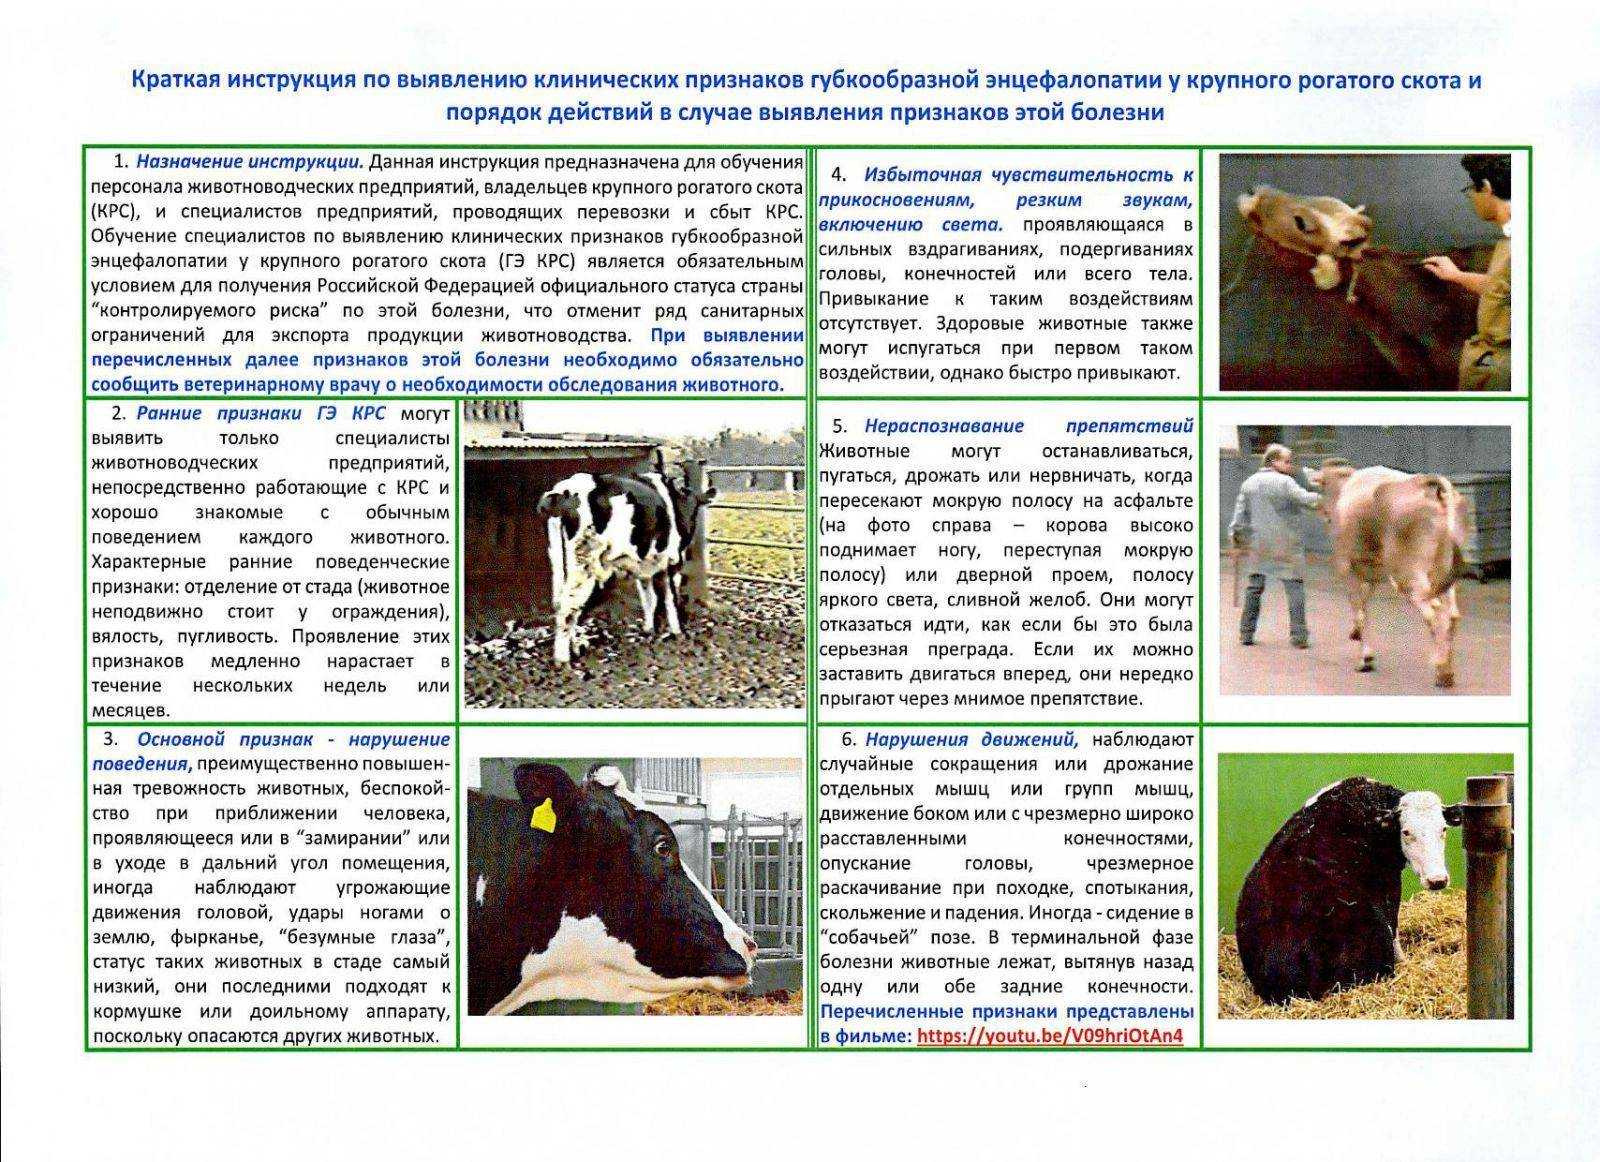 Фасциолез крупного рогатого скота как функционирующая паразитарная система : эпизоотологическая диагностика, меры борьбы